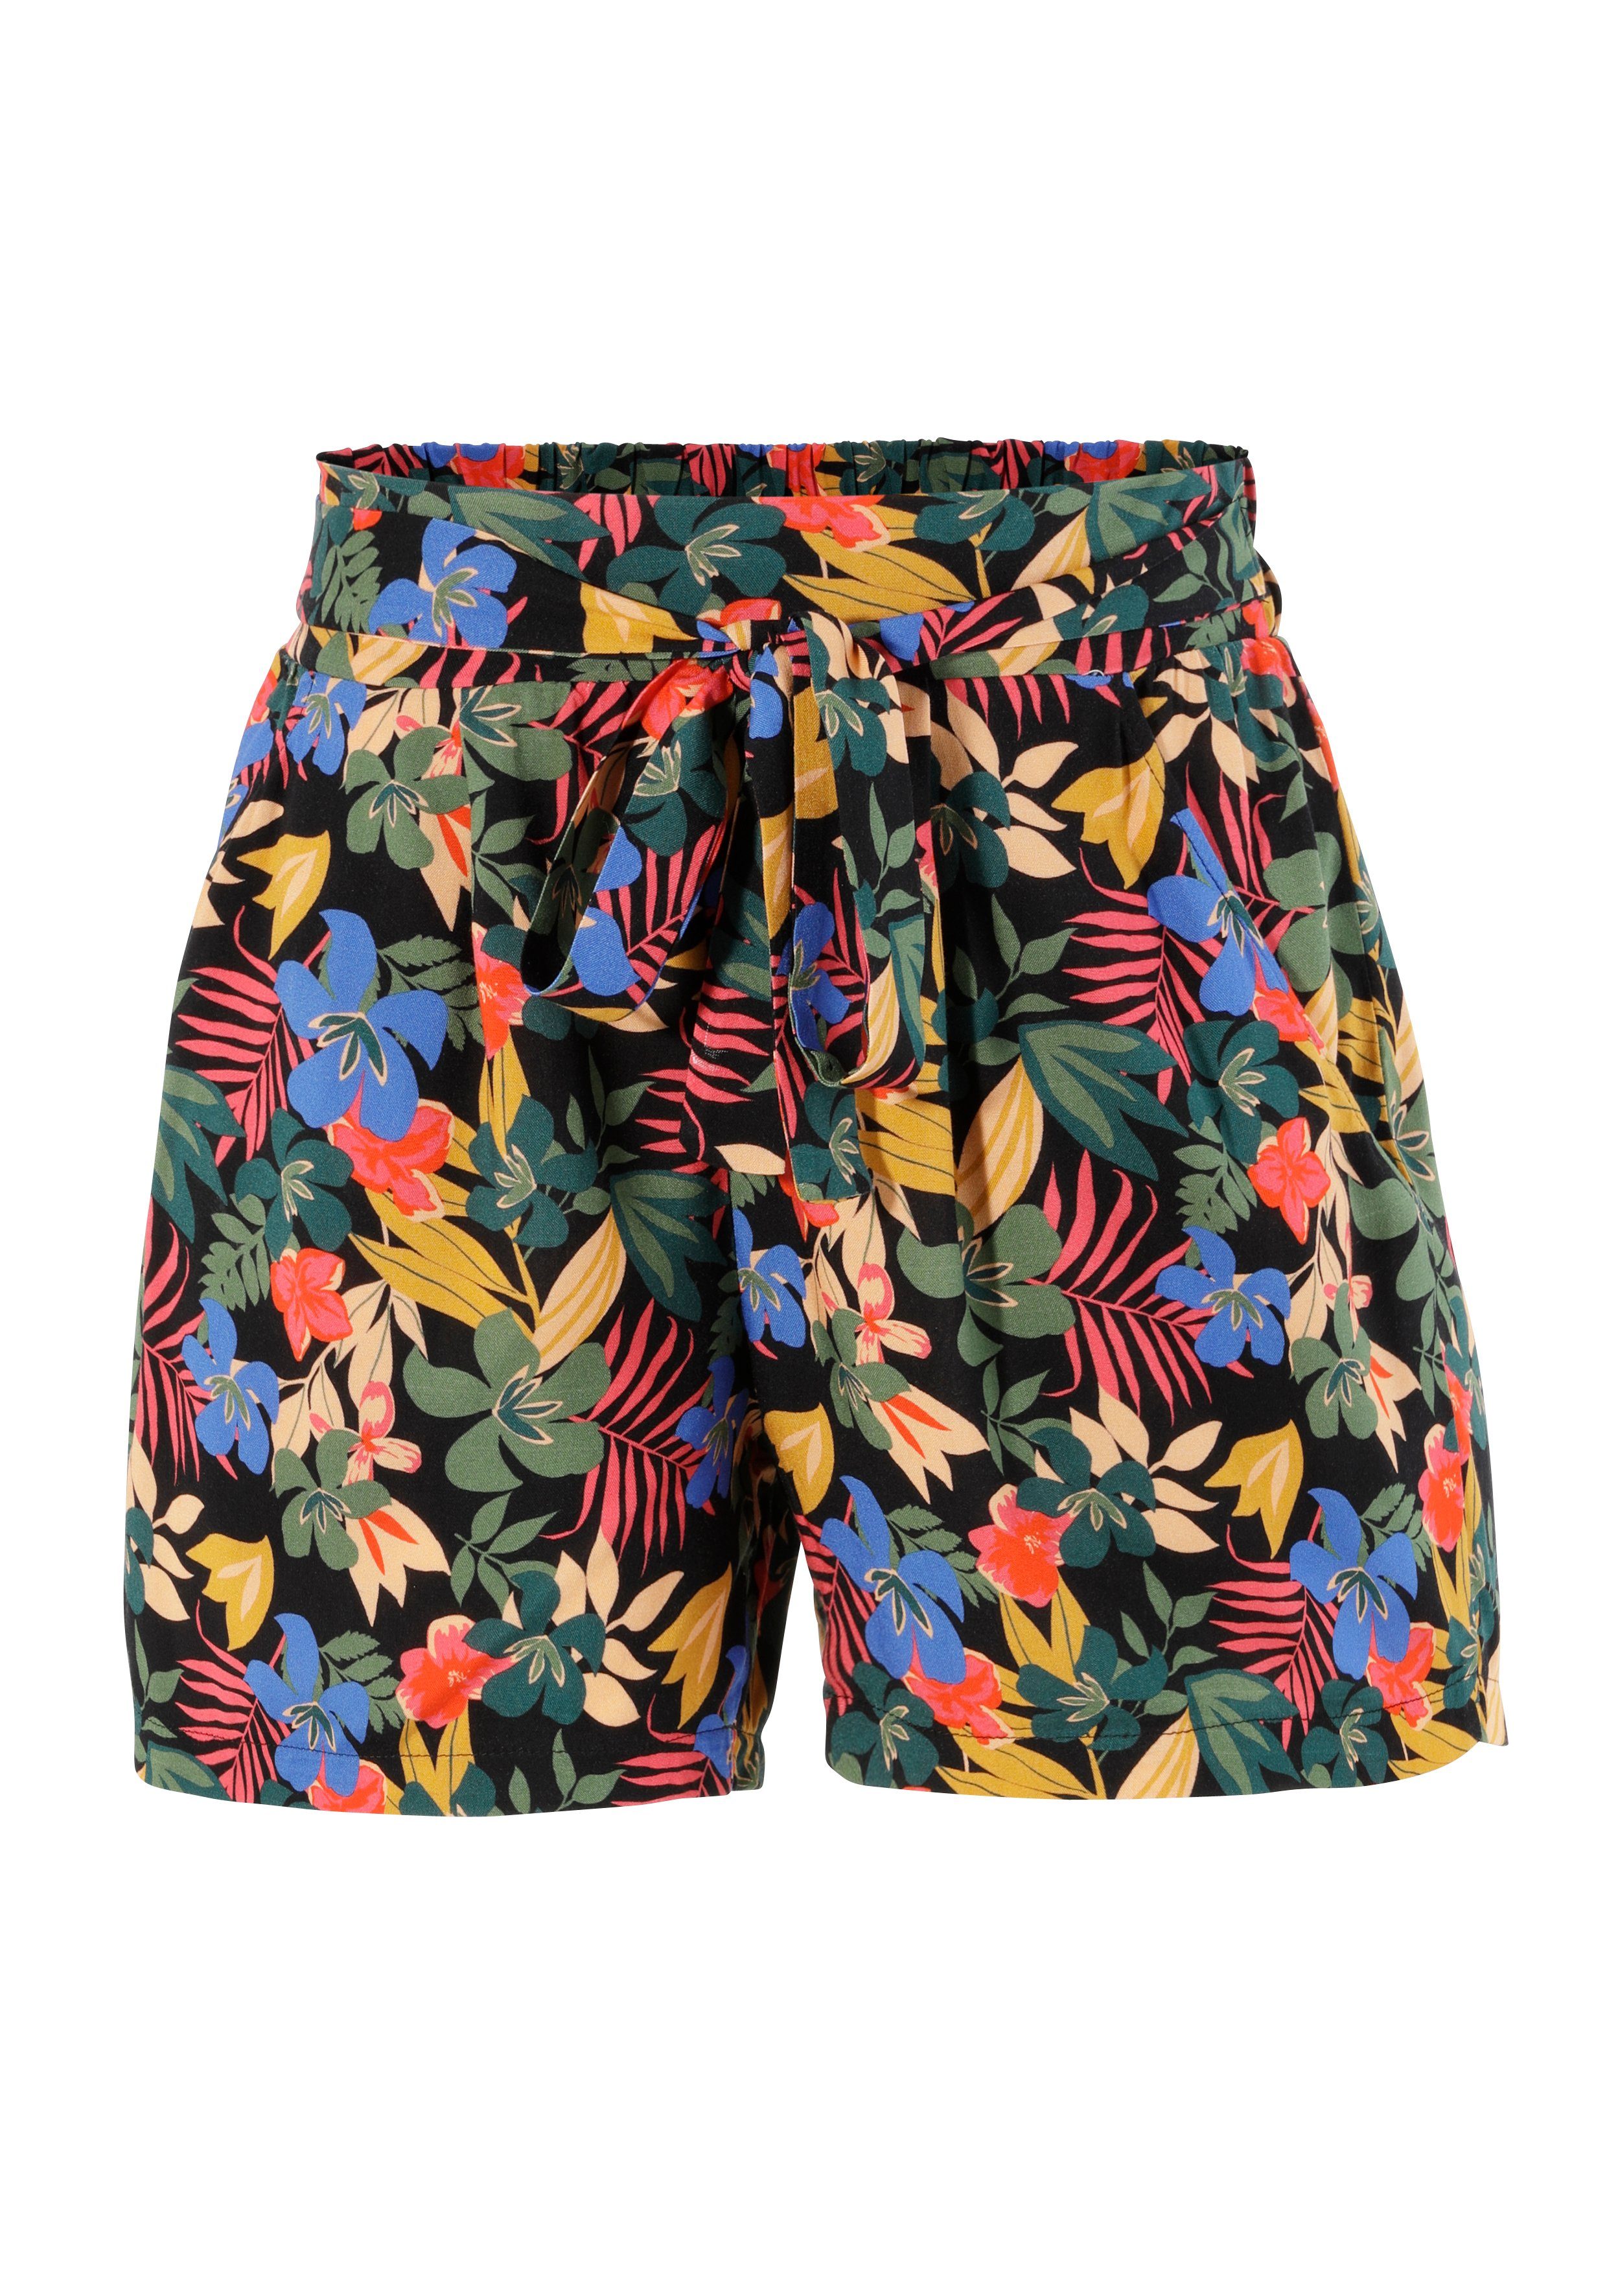 Aniston CASUAL Shorts mit unterschiedlichen Drucken schwarz-rot-moosgrün-apricot-royalblau-dunkelgrün-ocker-orange | Shorts